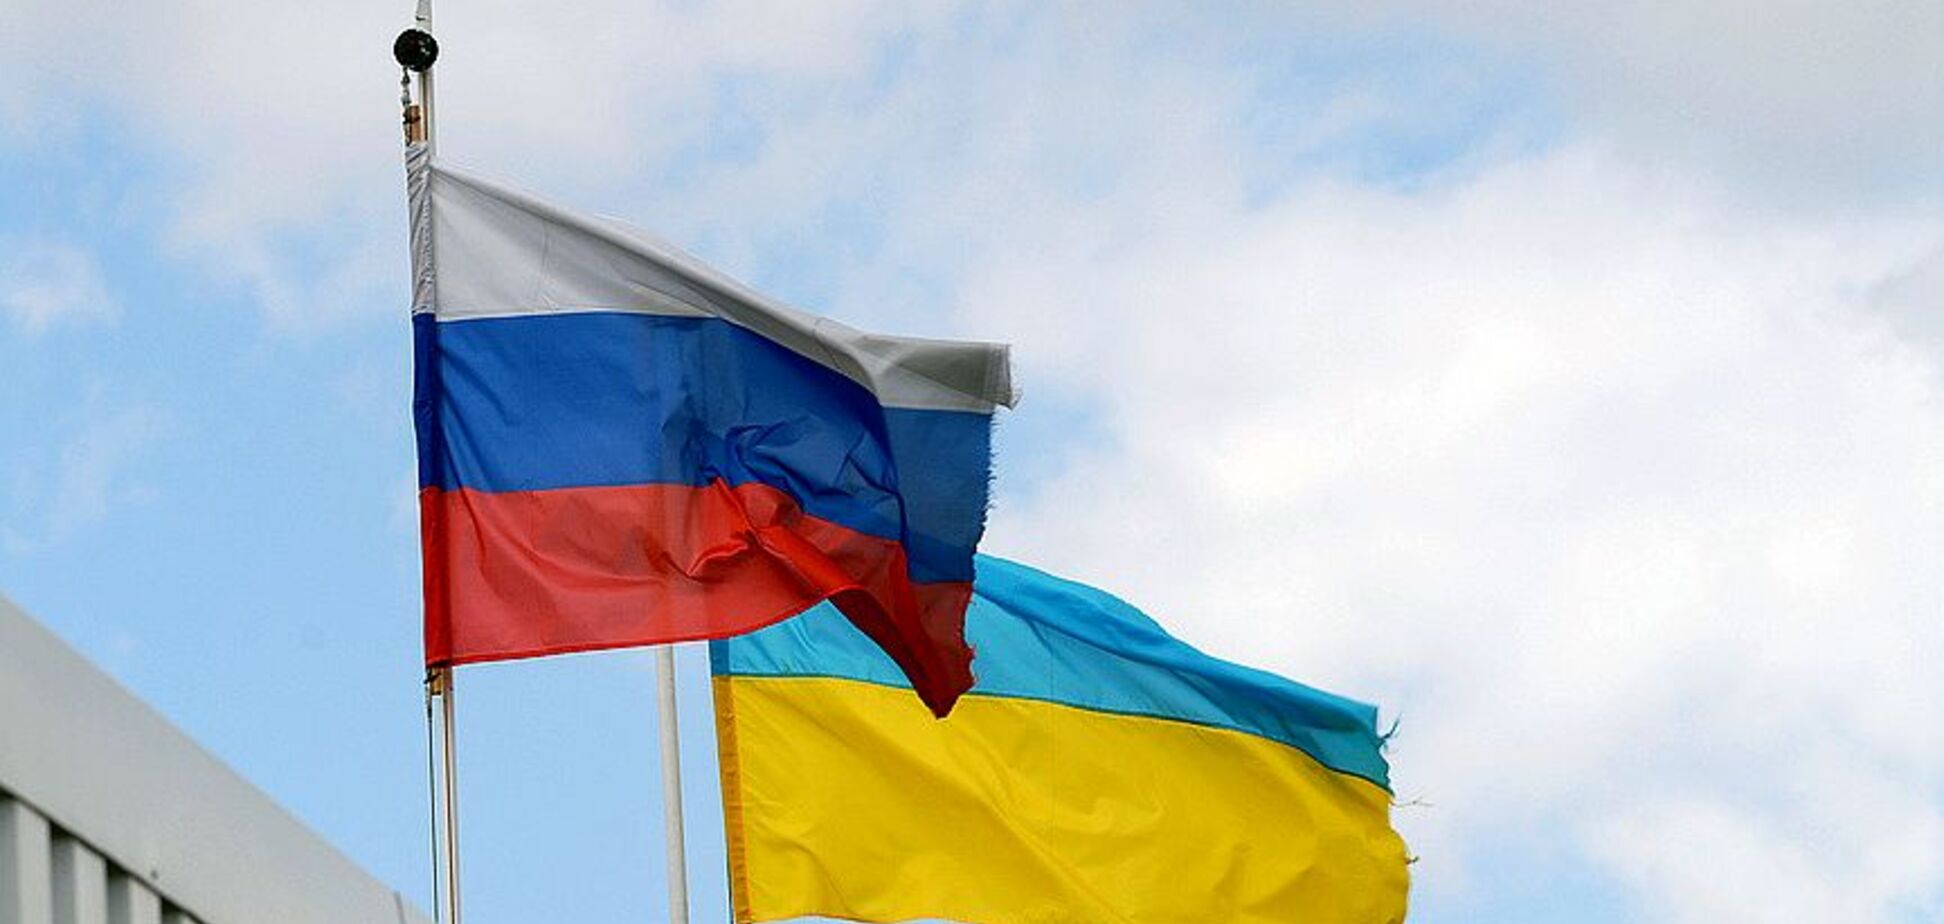 Йде запеклий бій: у 'Нафтогазі' розповіли про суперечки з 'Газпромом' в ЄС